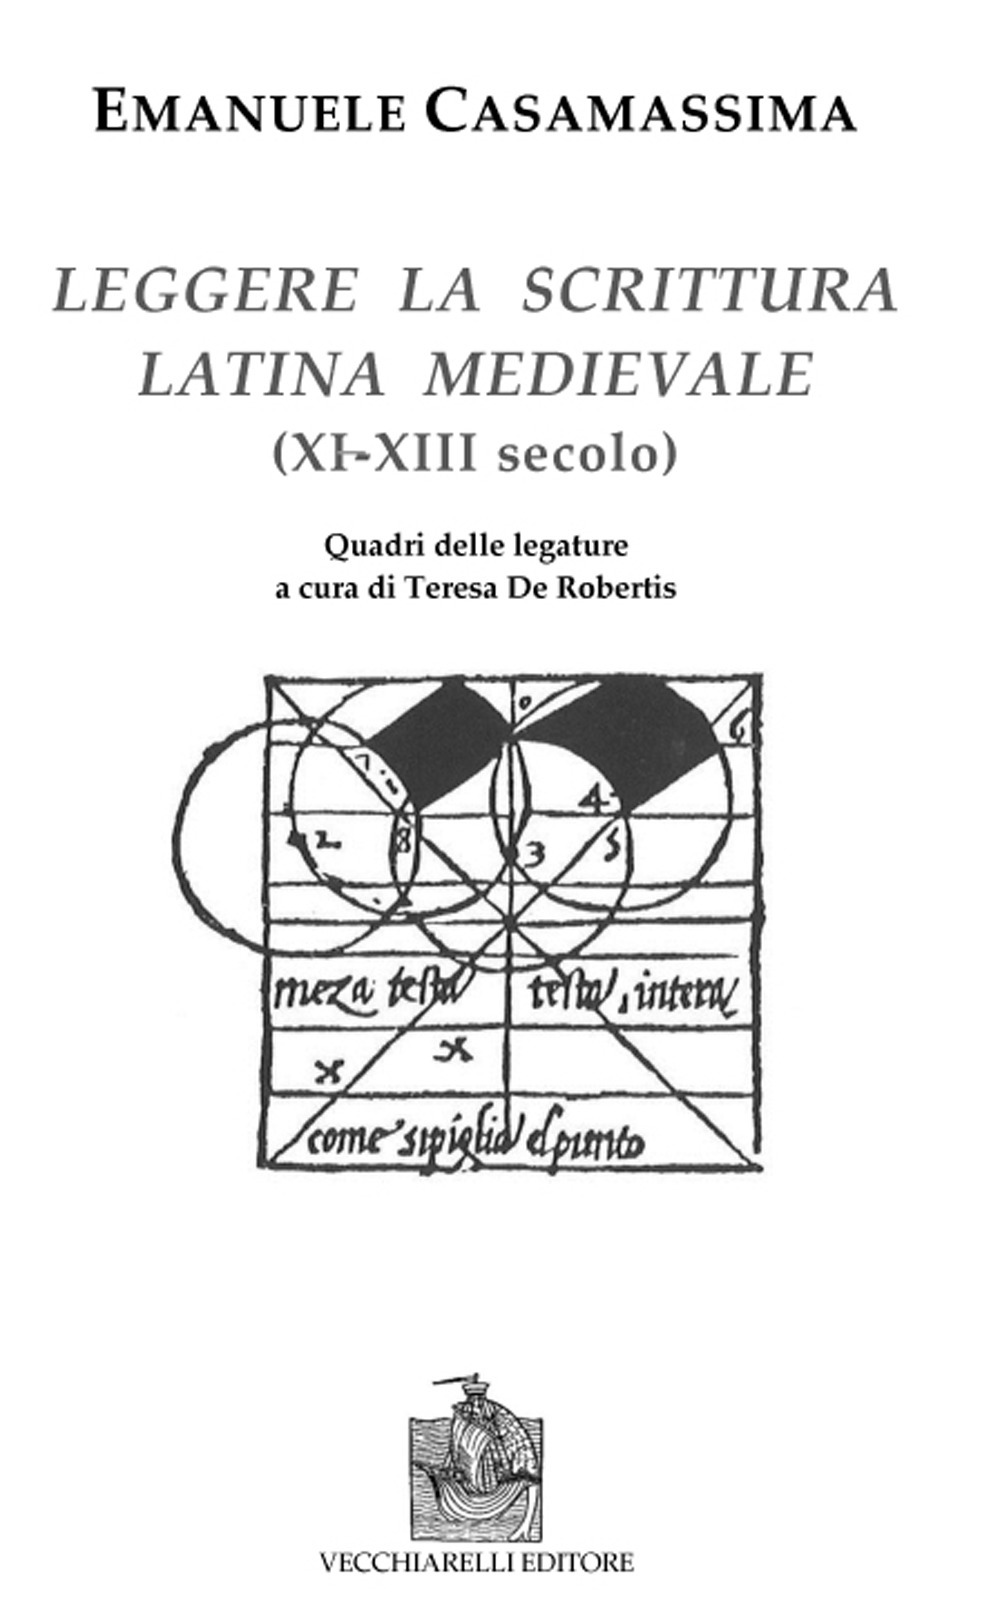 Leggere la scrittura latina e medievale (XI-XII) secolo)